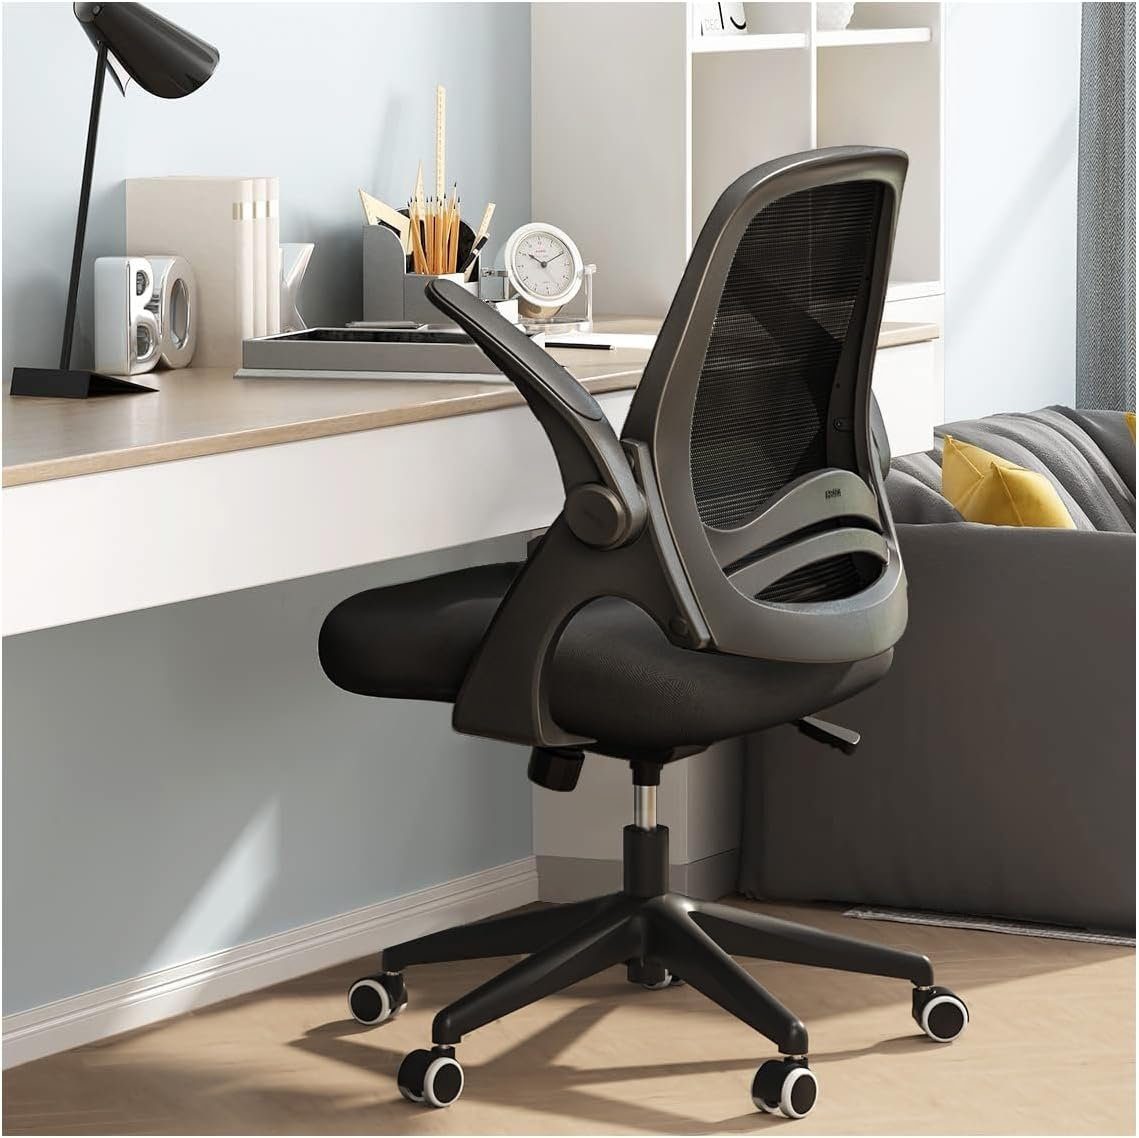 Hbada Bürostuhl (Bürostuhl ergonomisch: Schreibtischstuhl mit verstellbarem Sitz), Bürostuhl Ergonomischer Schreibtischstuhl Arbeitsstuhl Drehstuhl